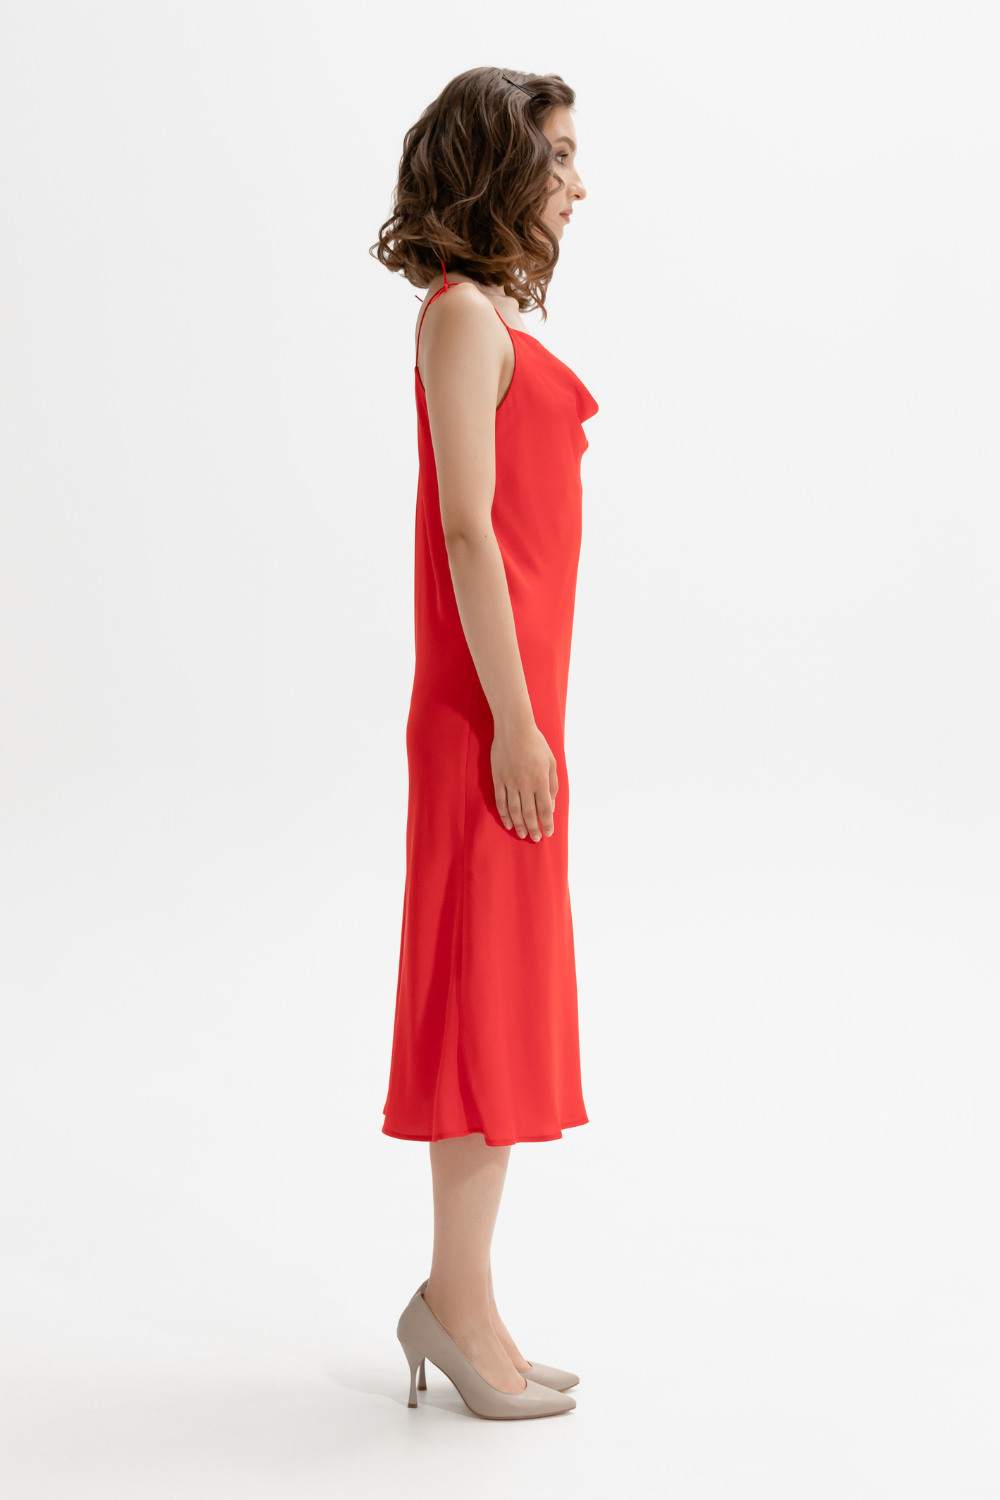 Red maxi dress MINT, (Mint), 22010253